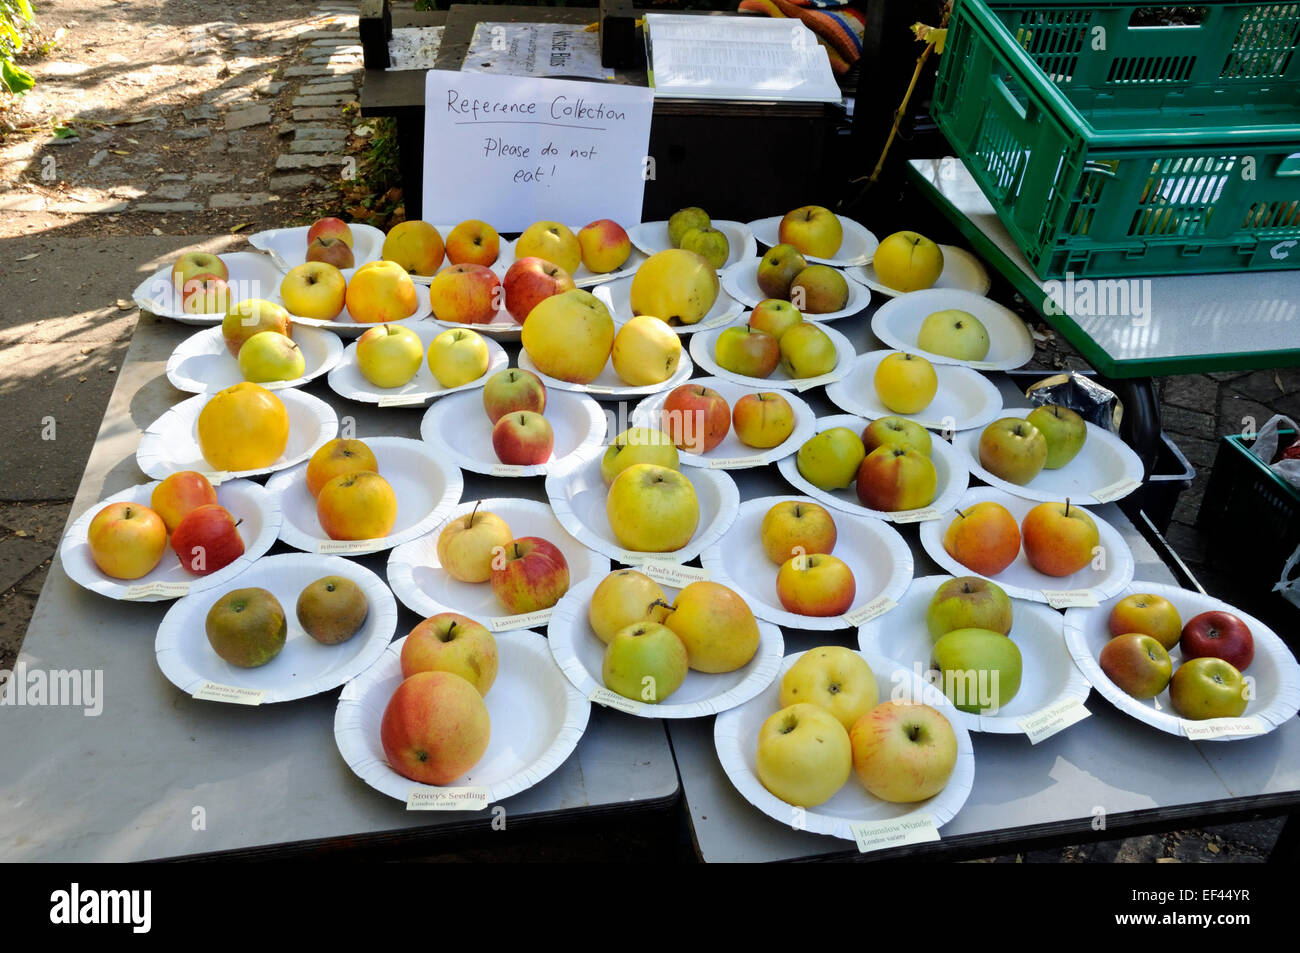 Raccolta delle mele del patrimonio sul display, Apple giorno Camley Street Parco naturale,London Borough of Camden, Inghilterra Gran Bretagna REGNO UNITO Foto Stock